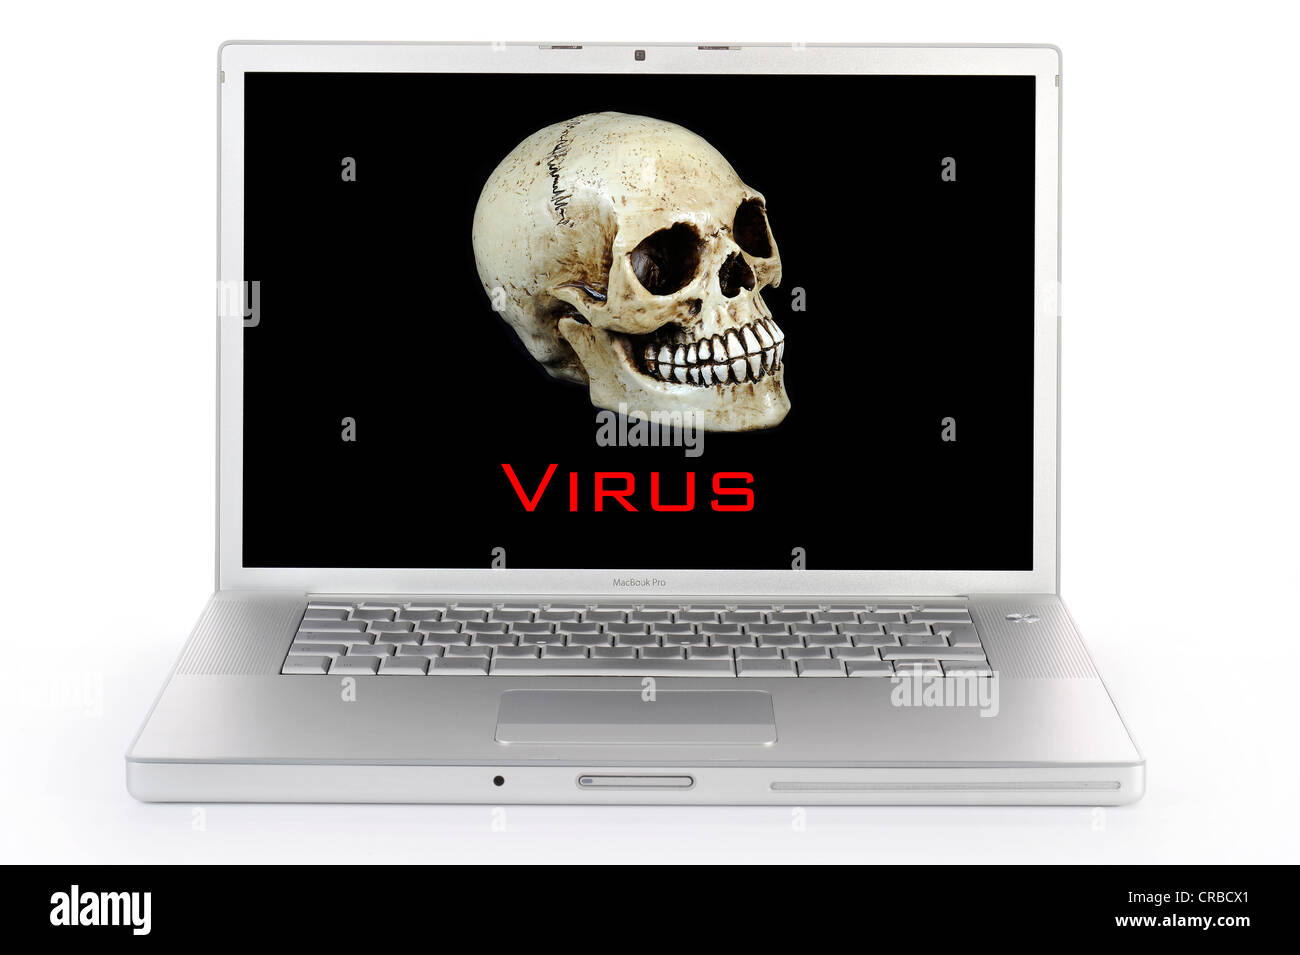 Computer portatile, cranio, lettering "Virus", immagine simbolica per allarme virus Foto Stock